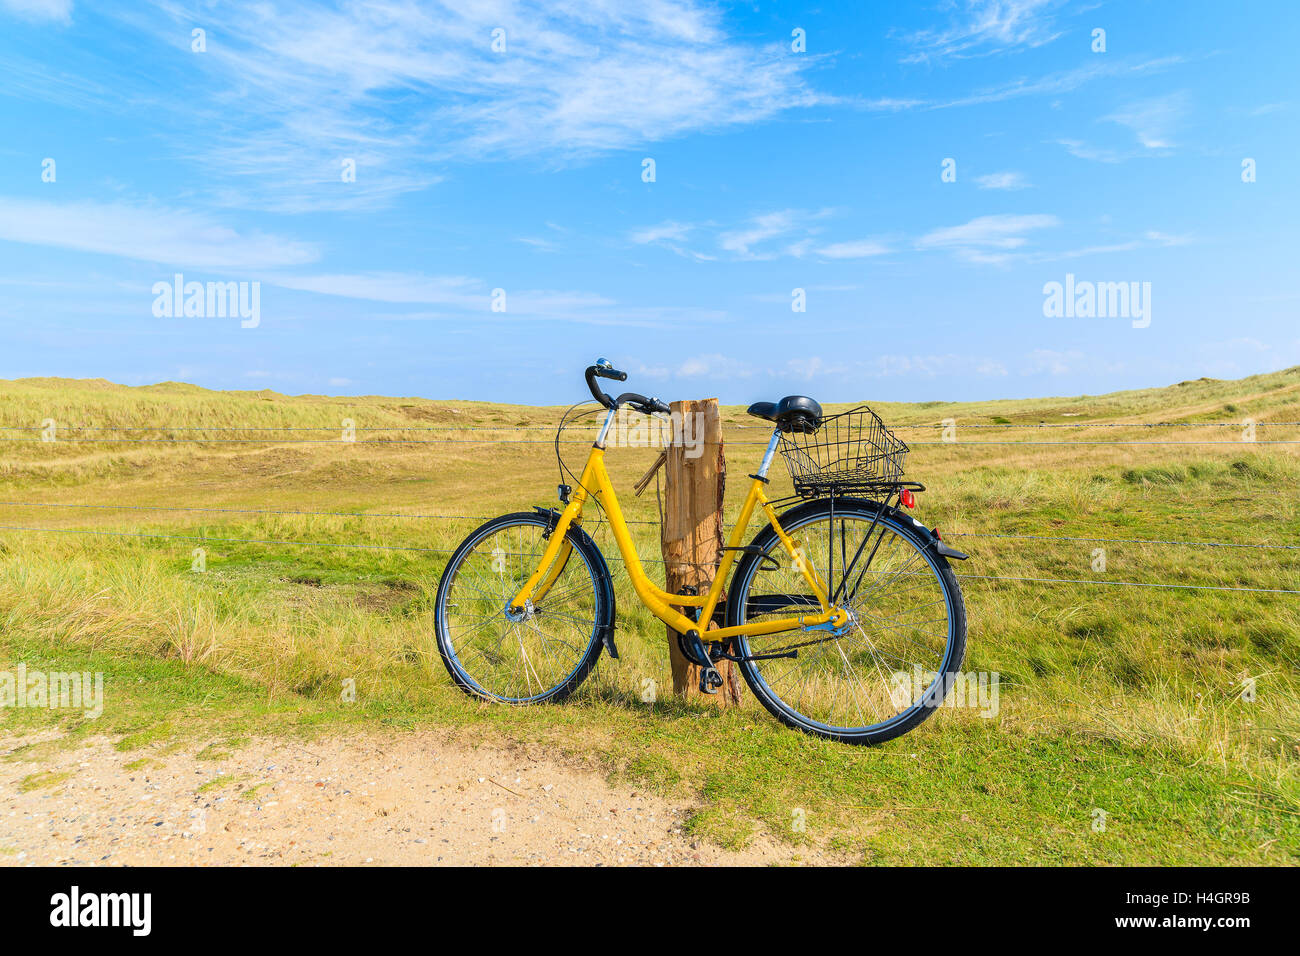 SYLT, Deutschland - Sep 6, 2016: gelb Fahrrad gegen ein Feld Zaun in der Landschaft Landschaft der Insel Sylt Leuchtturm Ellenbogen in der Nähe geparkt. Stockfoto